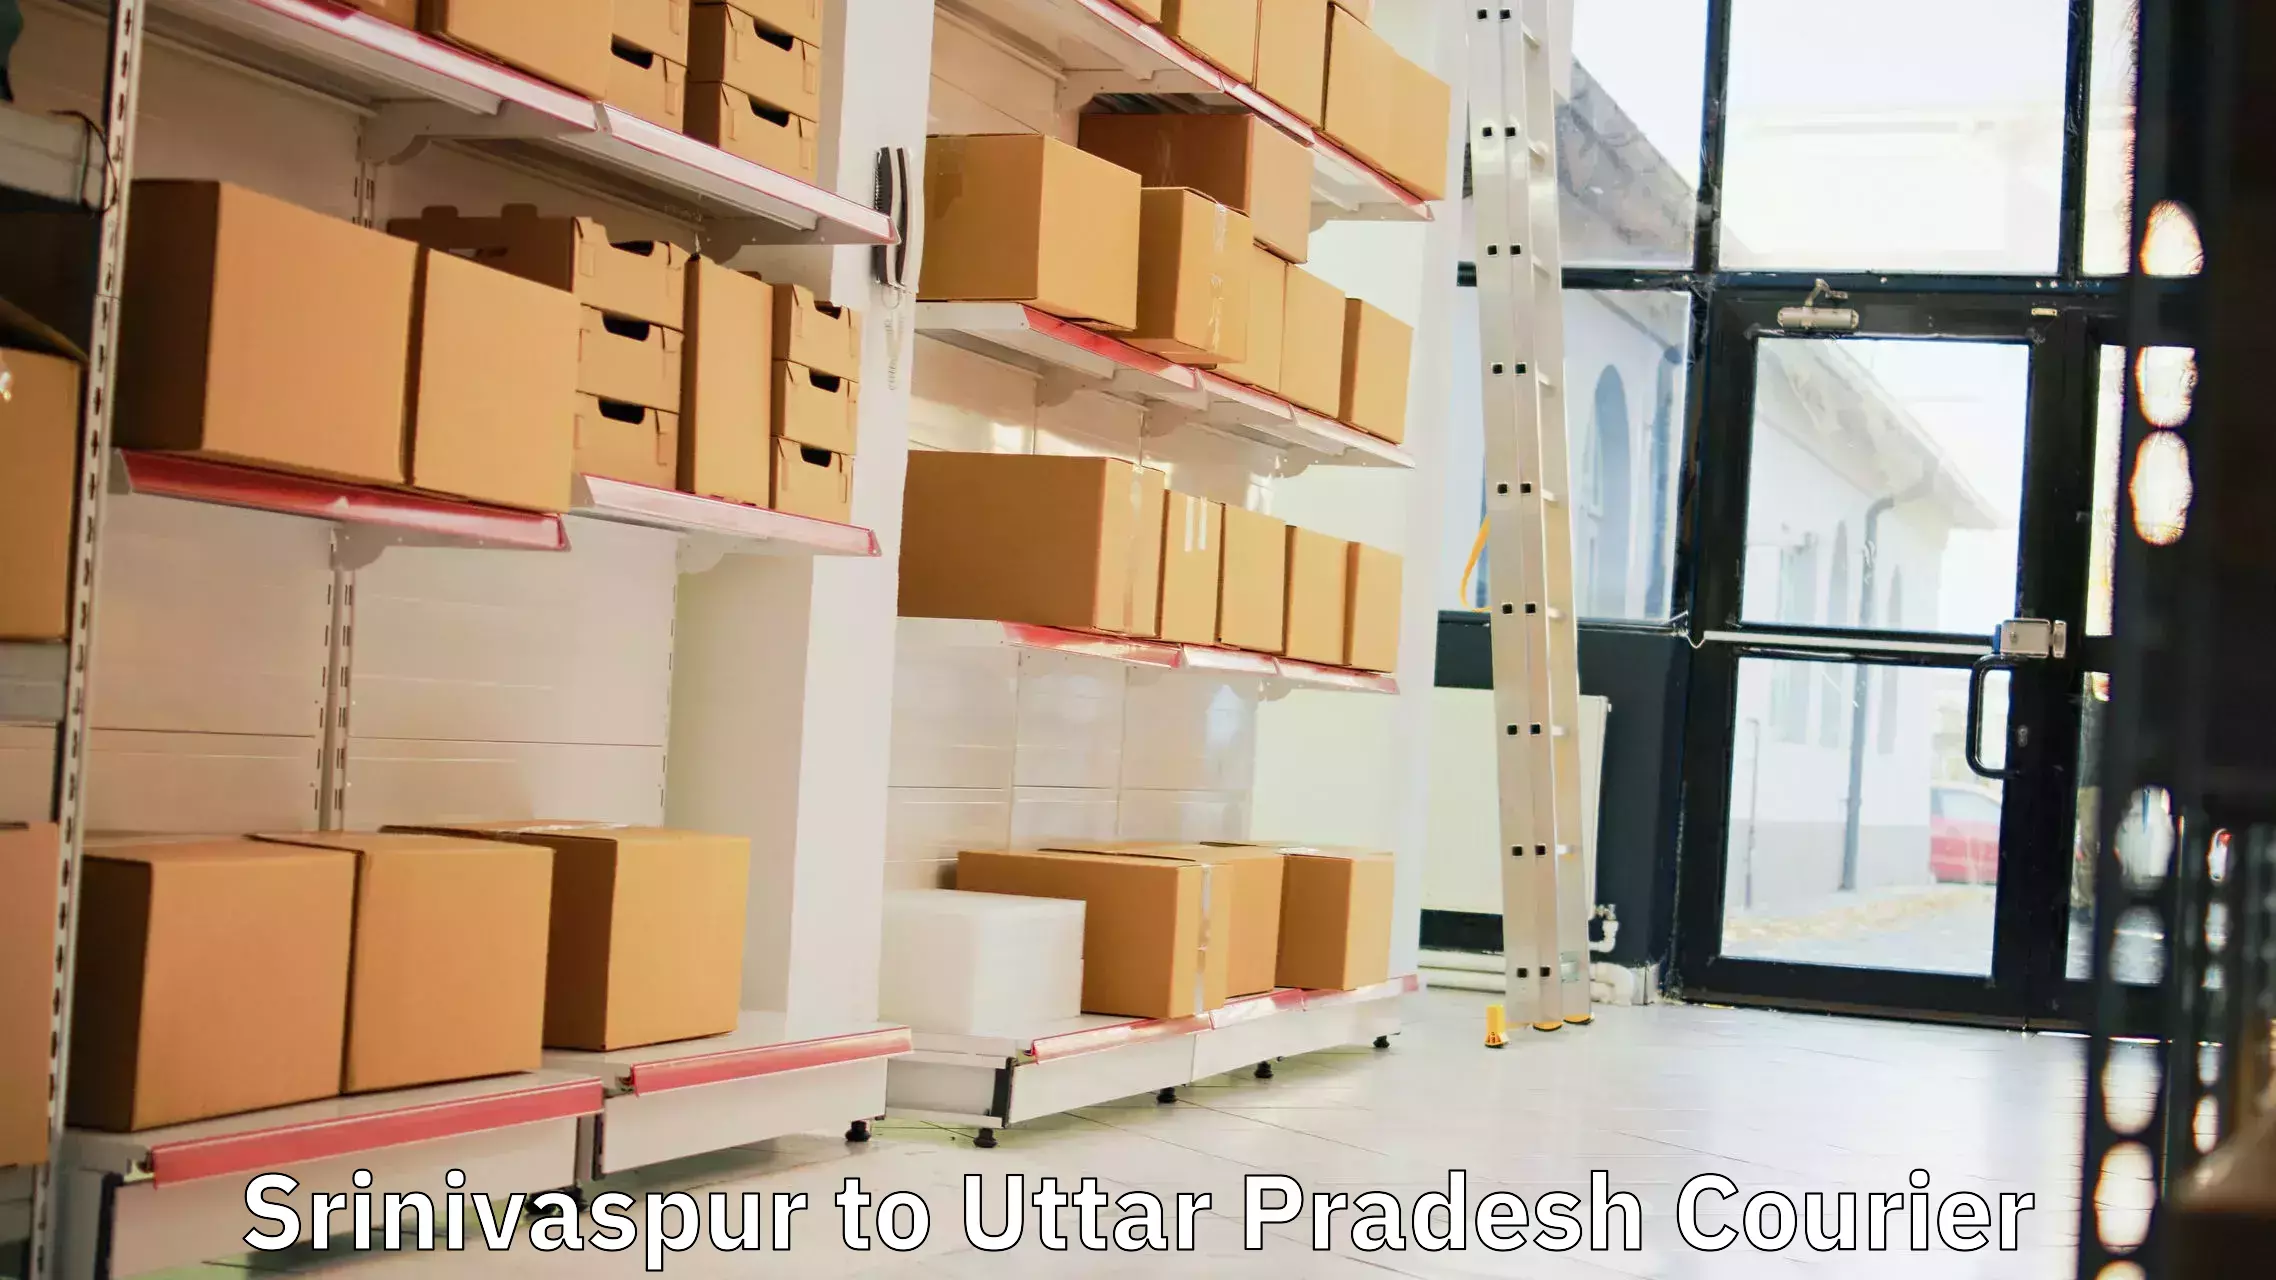 Efficient courier operations Srinivaspur to Uttar Pradesh